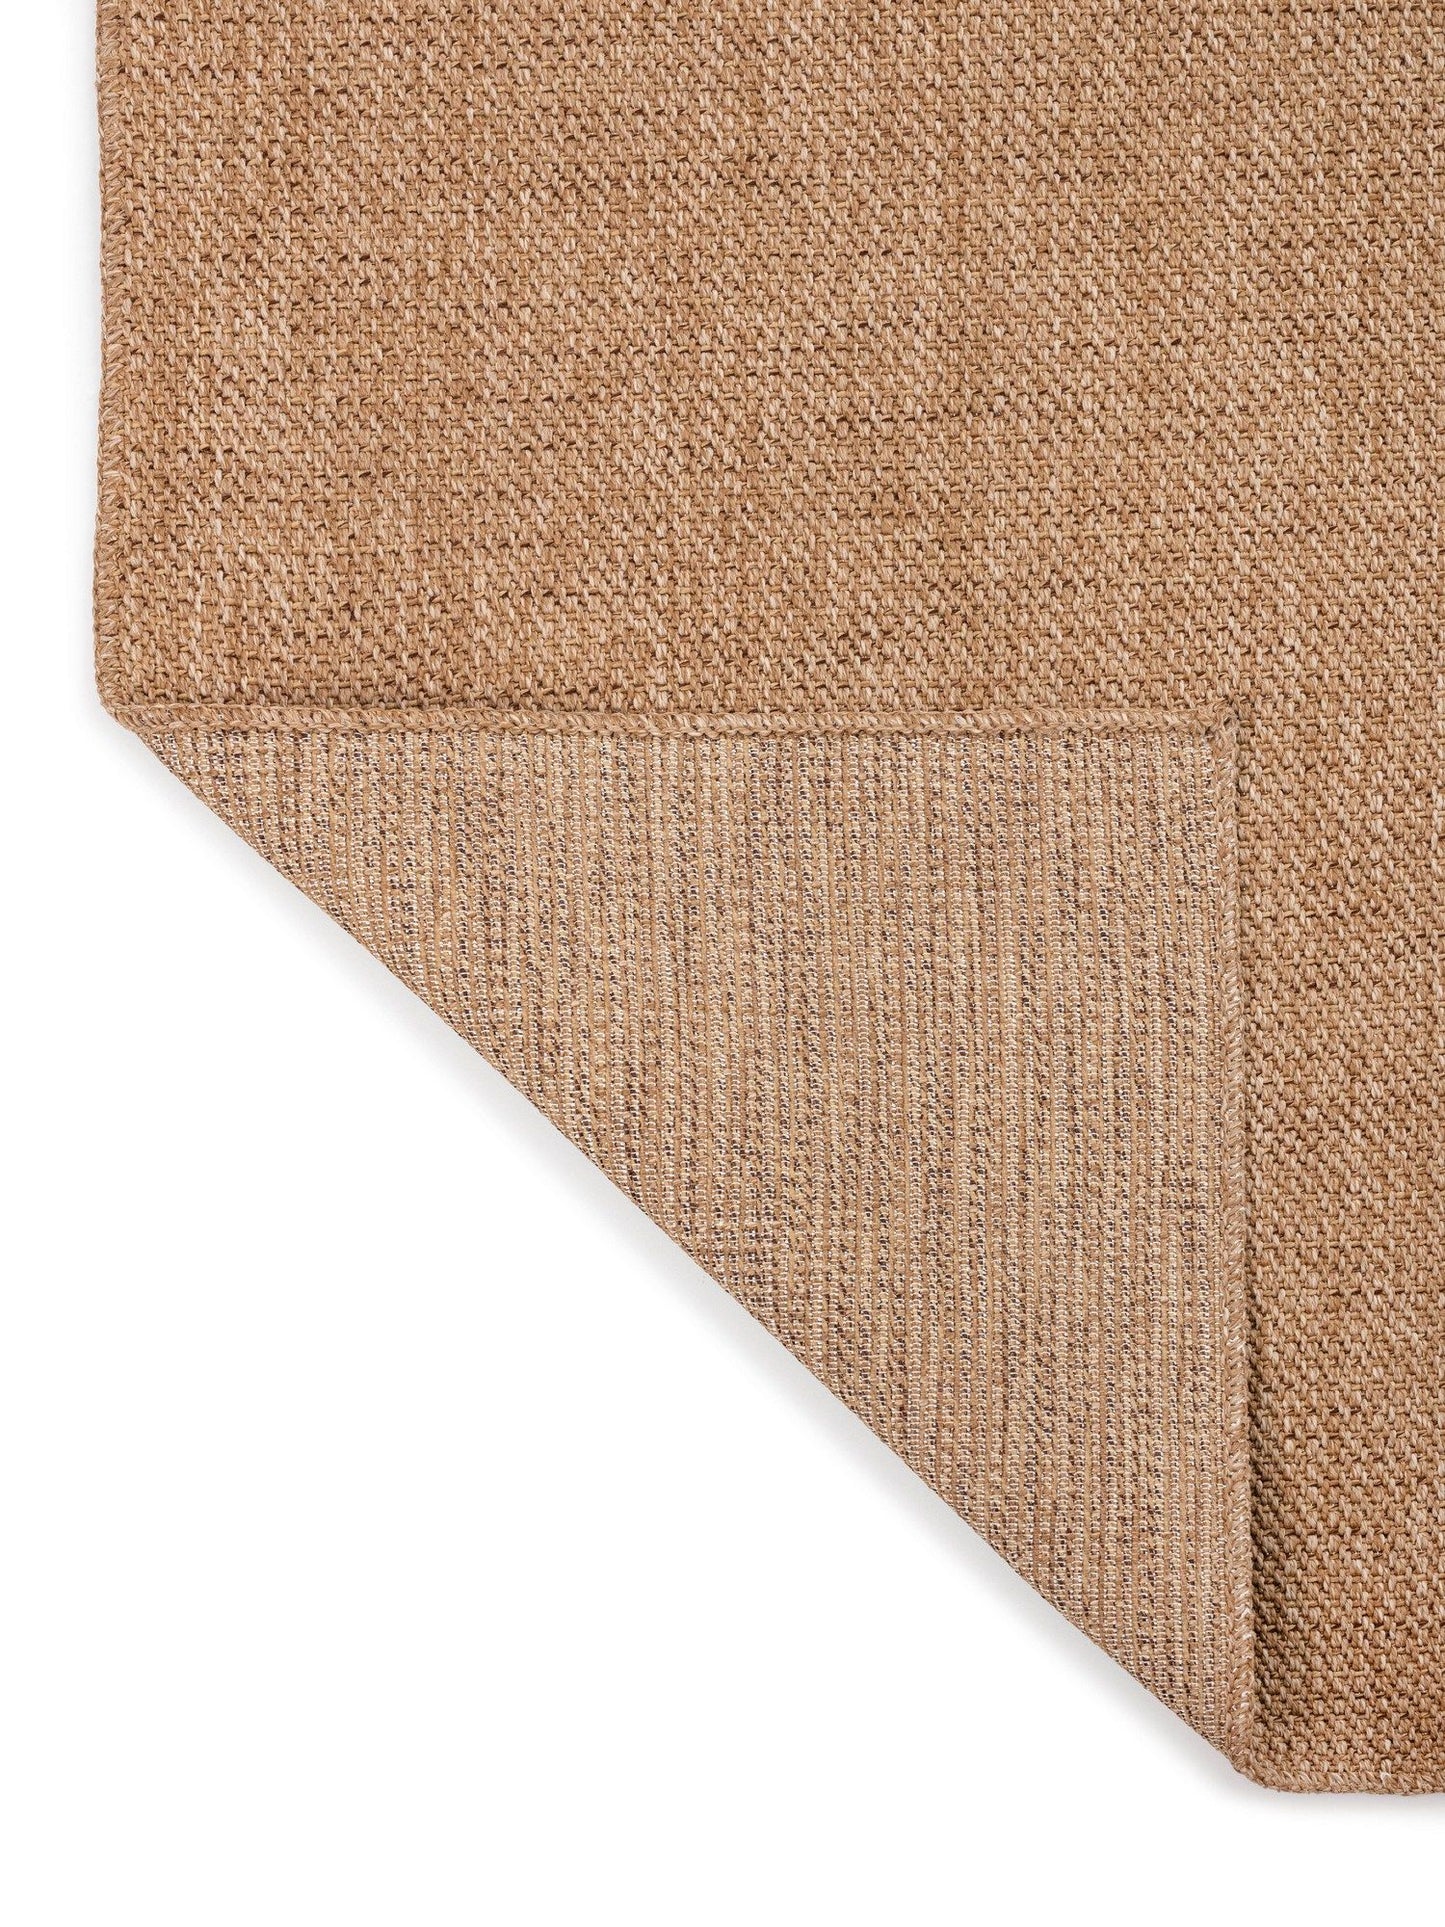 0604 Jut - Brown - Carpet (80 x 300)